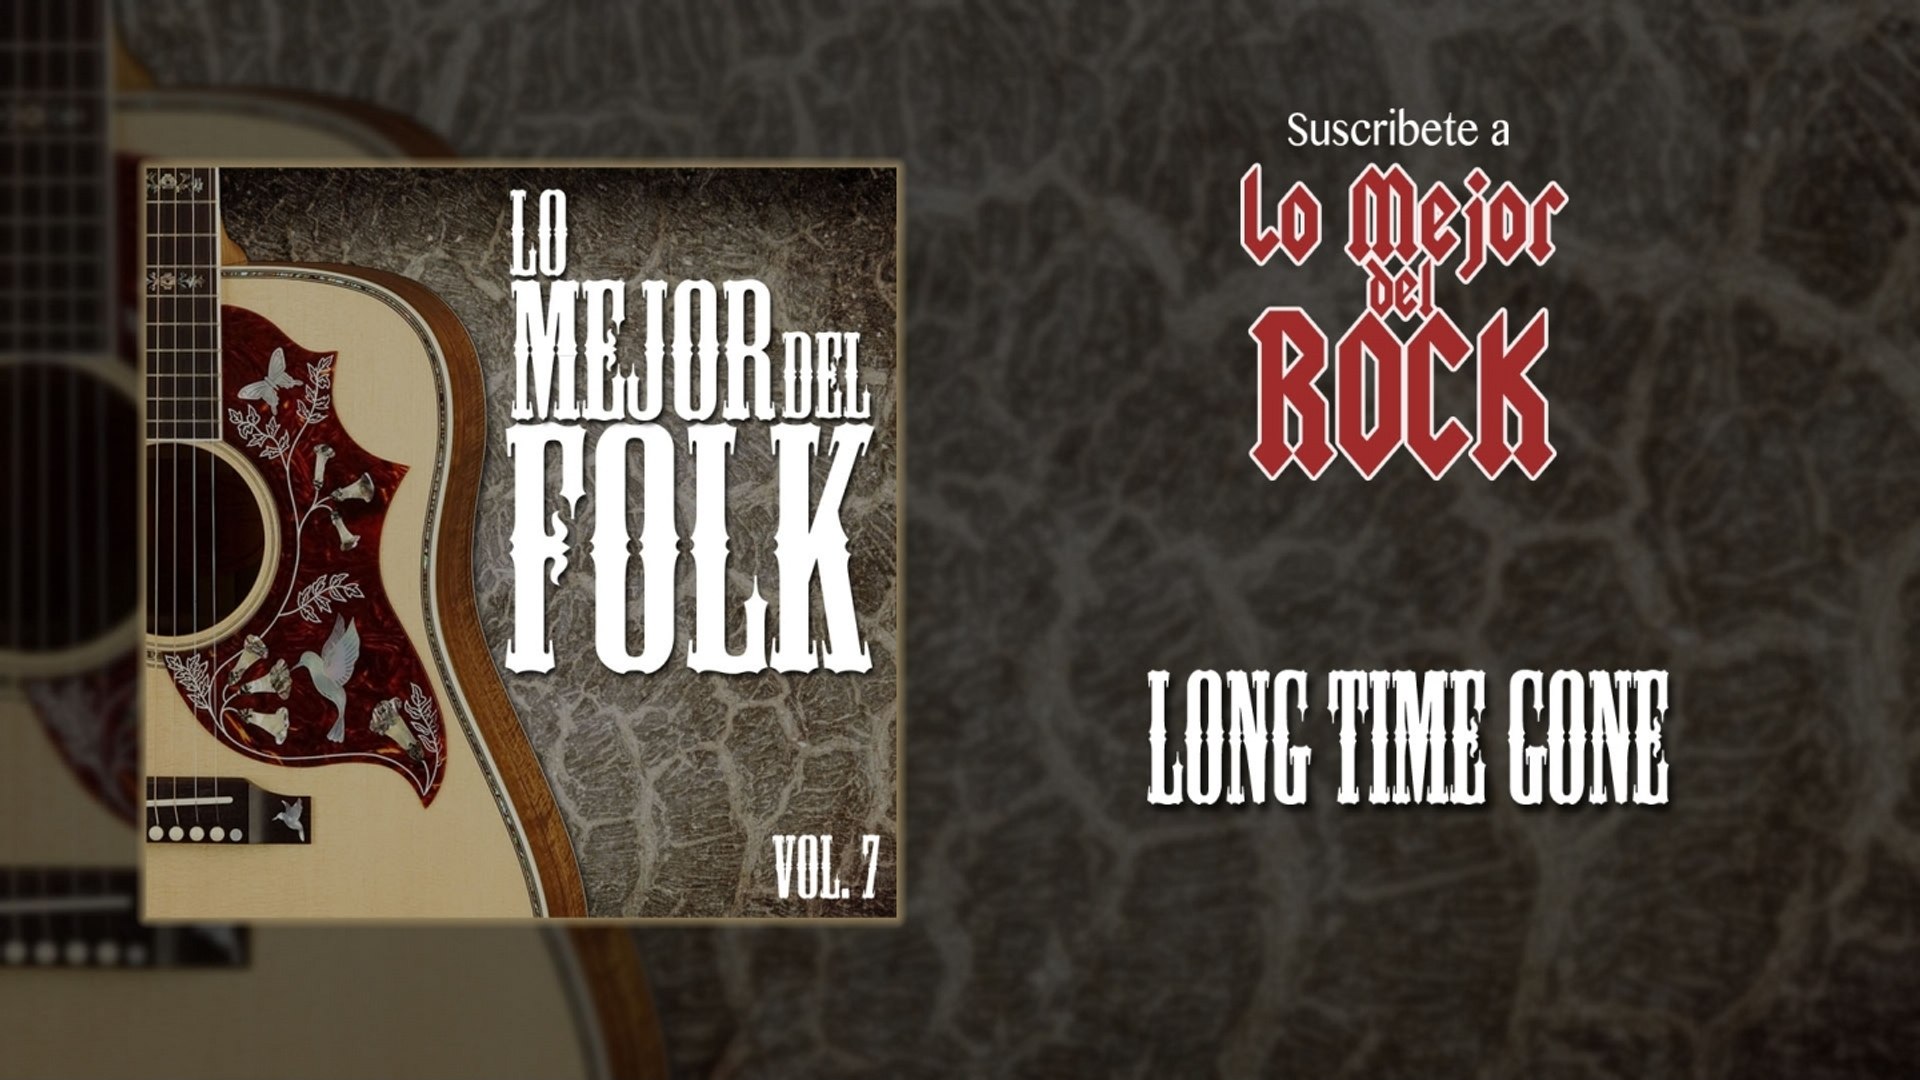 ⁣Lo Mejor del Folk - Vol. 7 - Long Time Gone